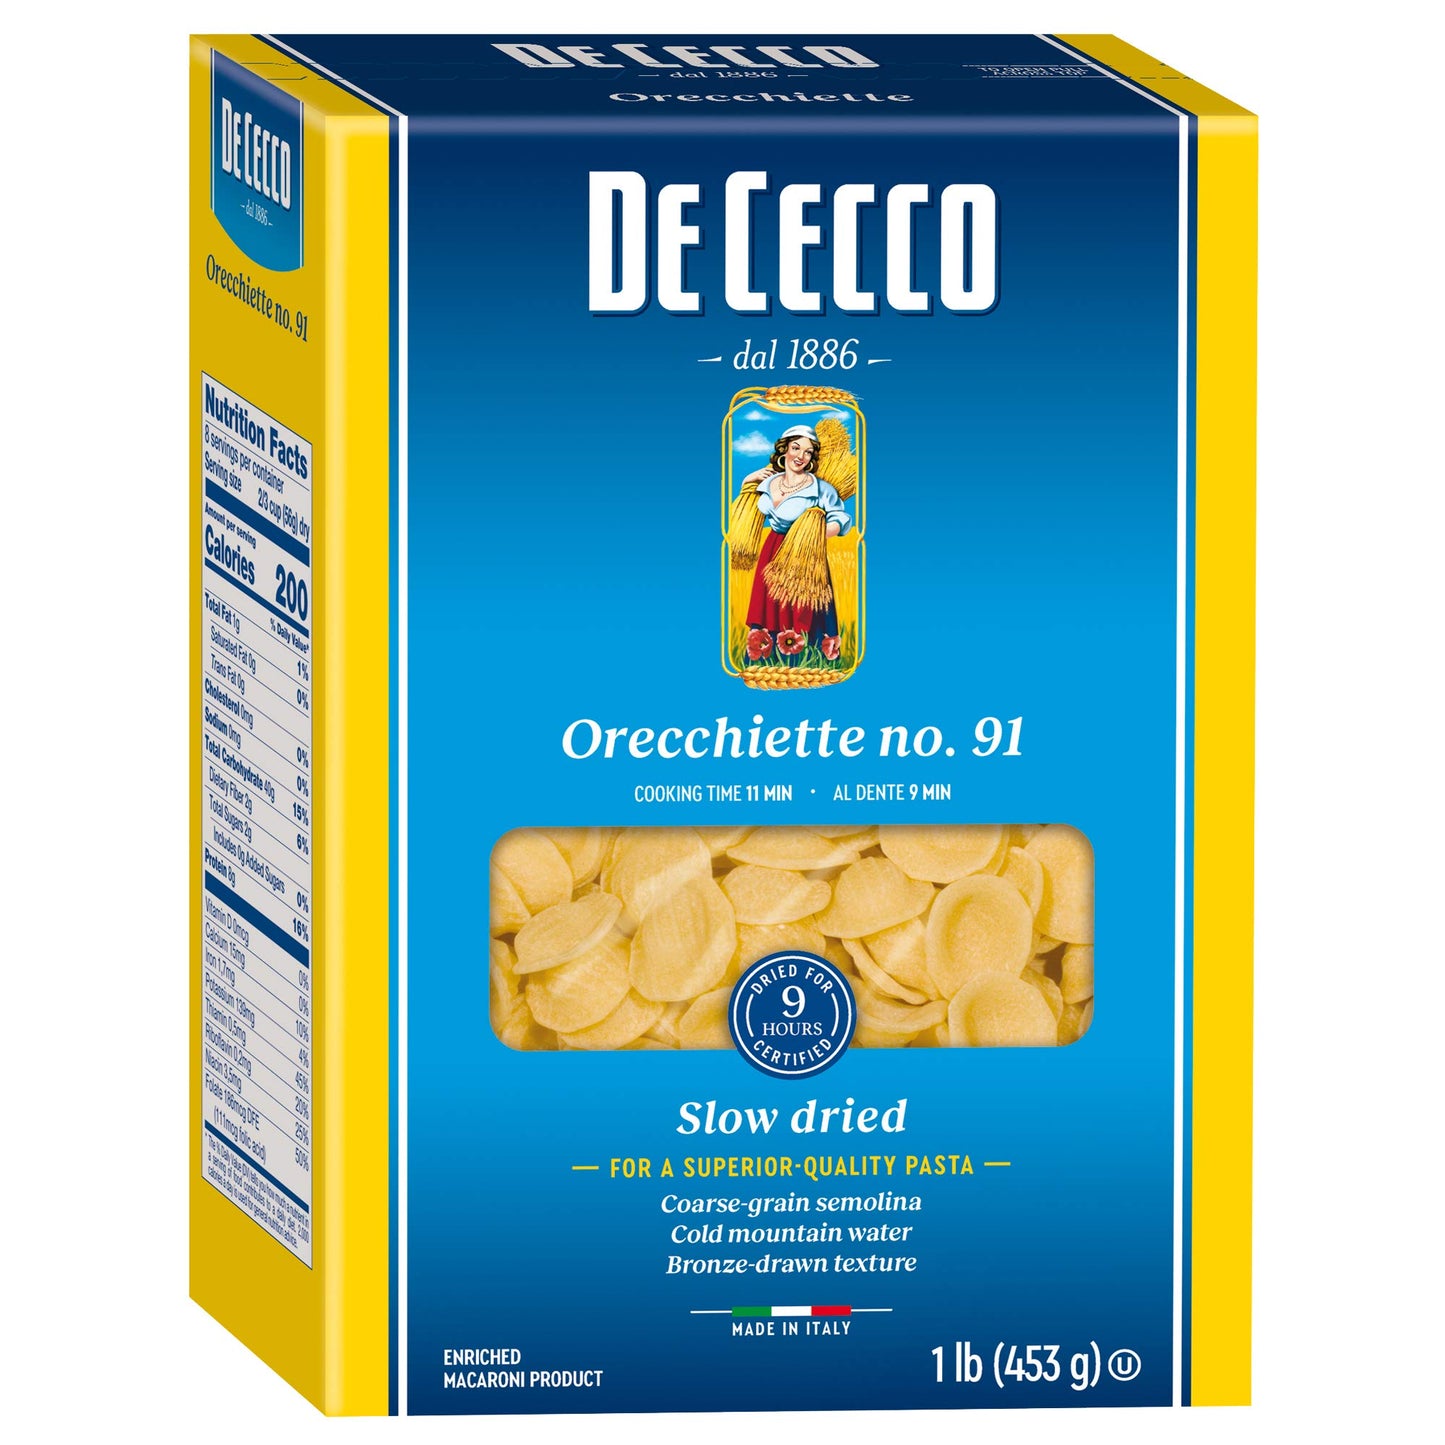 De Cecco Orecchiette No. 91 Pasta 16 Oz. Box